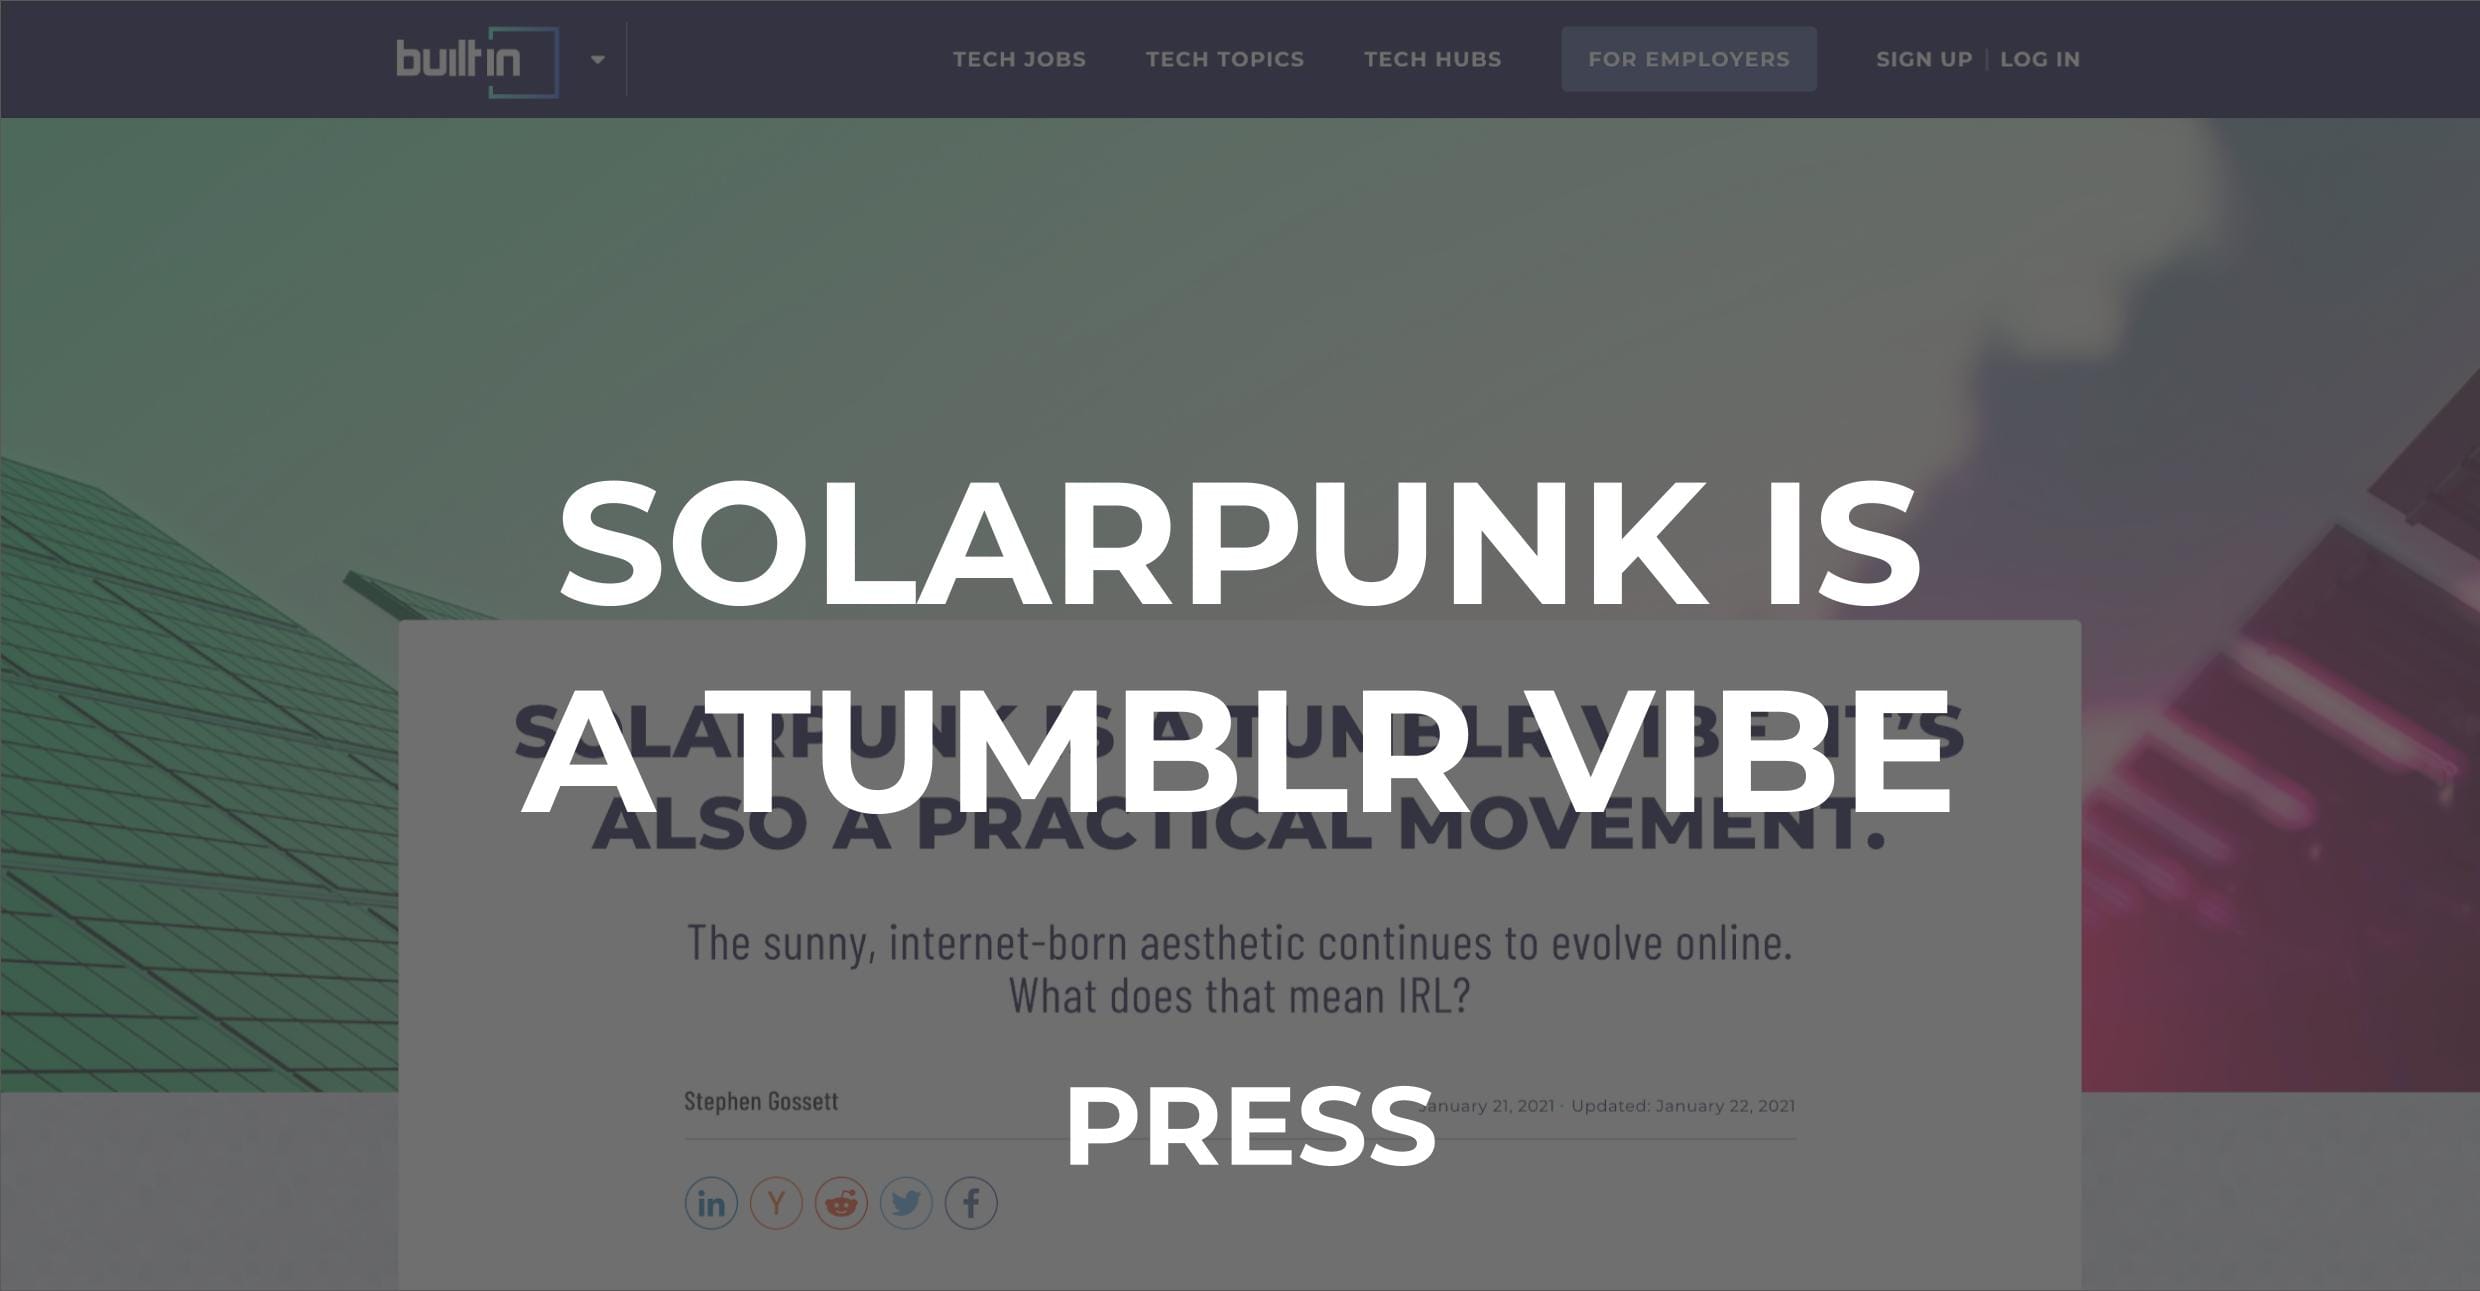 Solarpunk Press